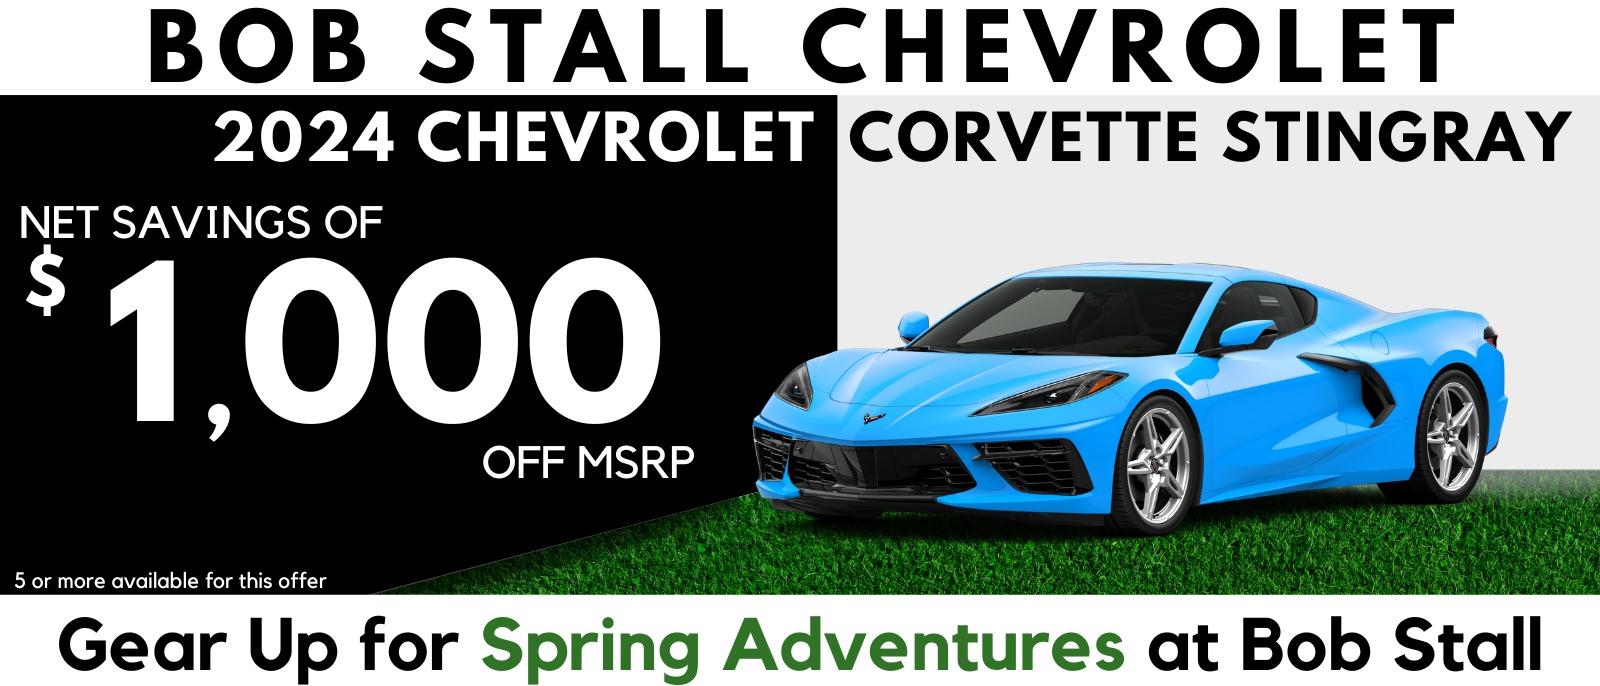 2024 Corvette Savings - Net Savings of $1,000 off MSRP